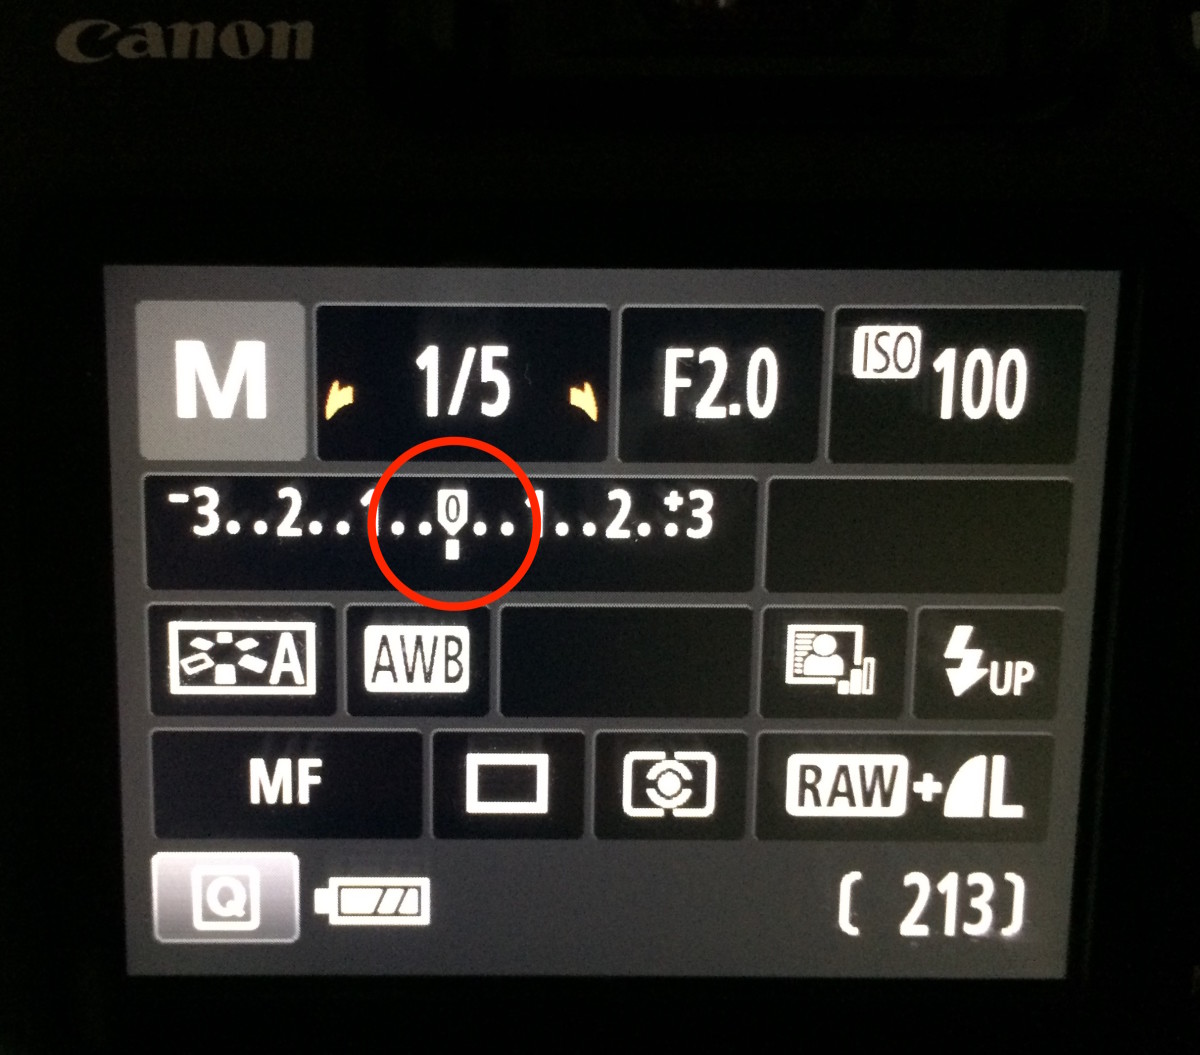 Meter showing correct exposure.